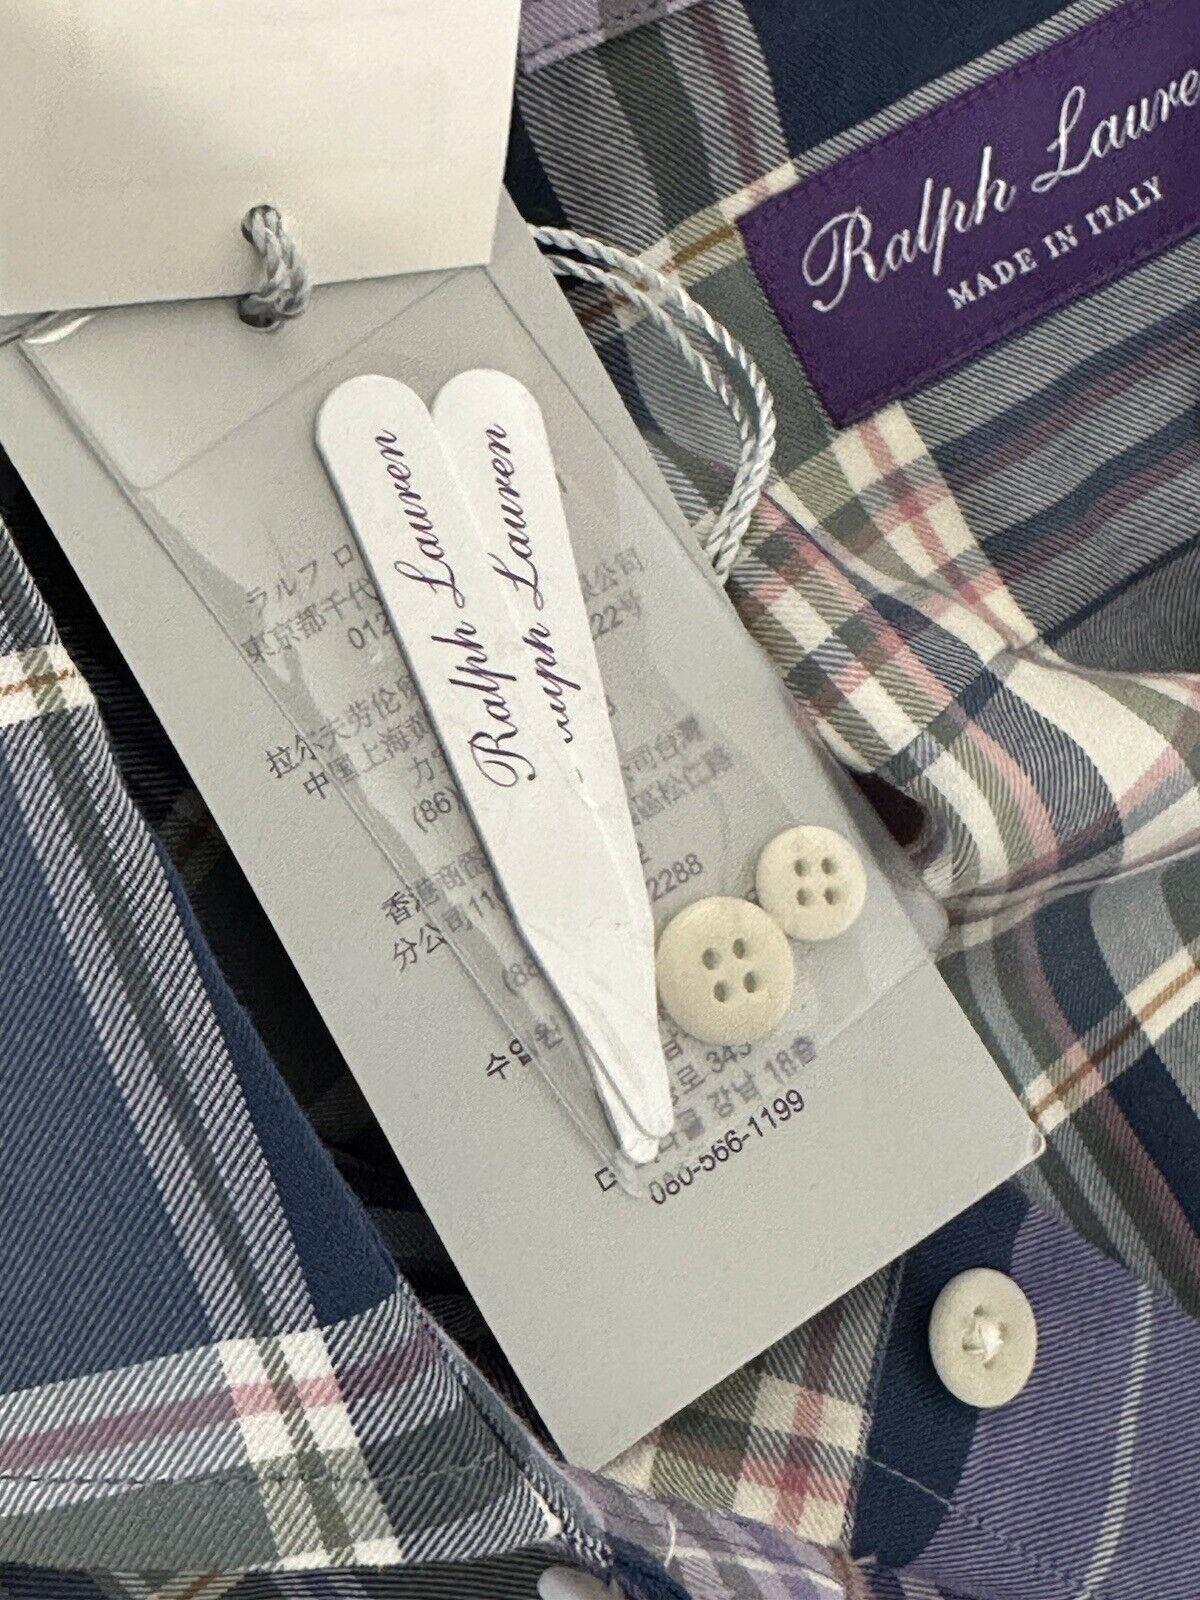 Мужская хлопковая мужская рубашка размера XL от Ralph Lauren Purple Label стоимостью 495 долларов США, сделано в Италии 